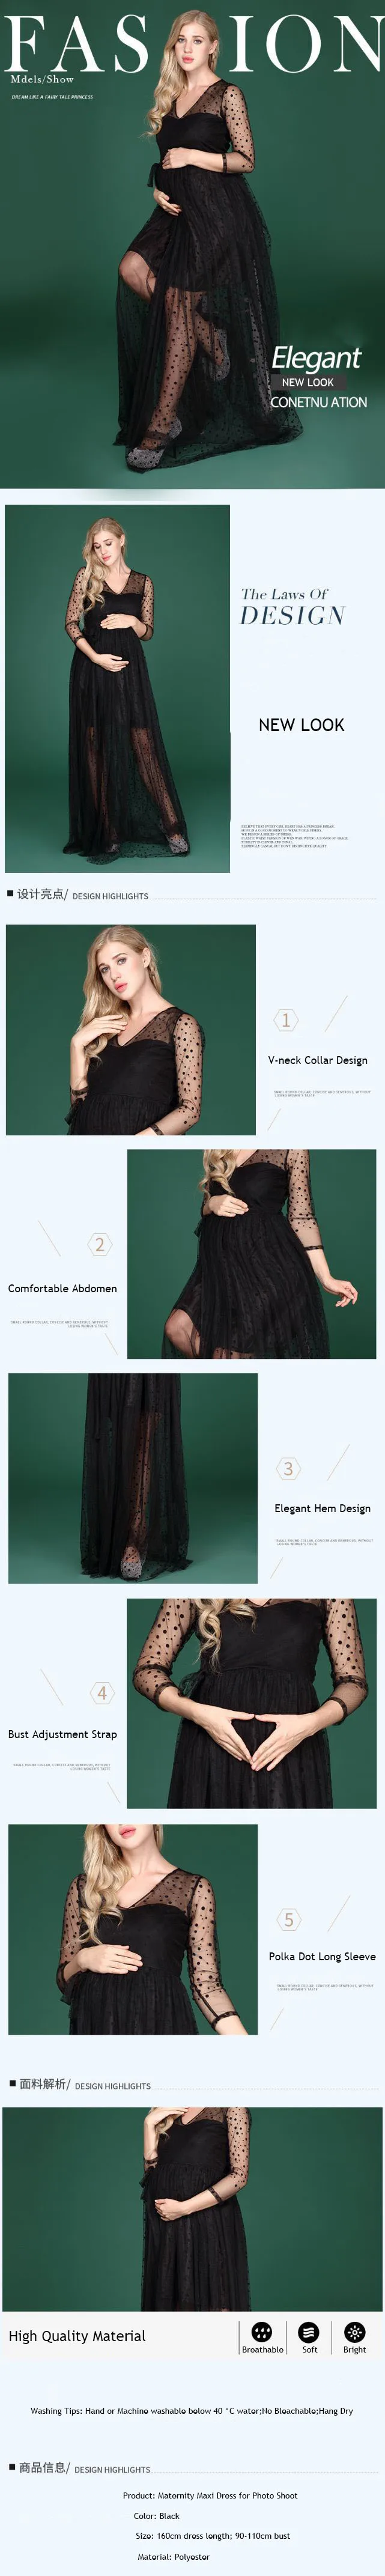 Платье для фотосессии для беременных женщин с v-образным вырезом, в черный горошек, длинное платье для беременных, платья макси для фотосессии